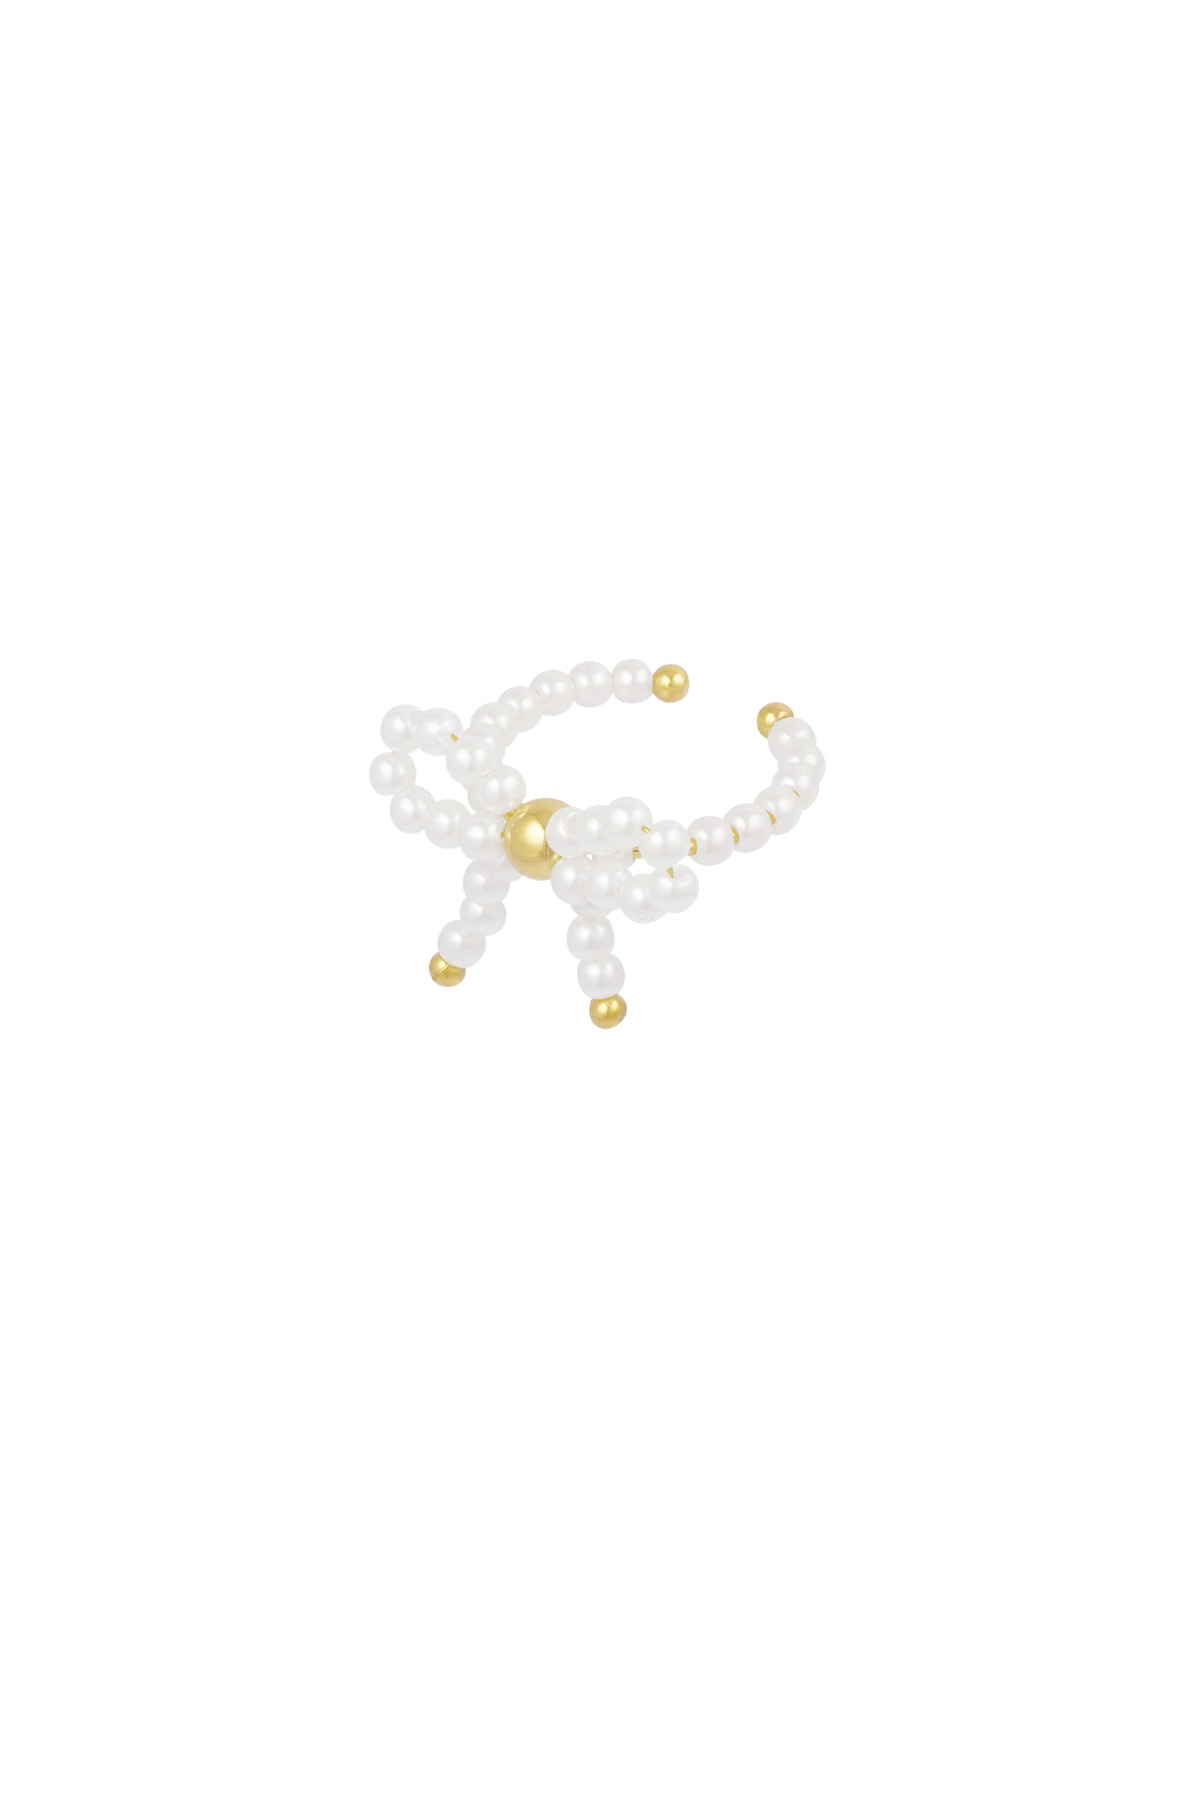 Bague noeud perle - or blanc  Image4